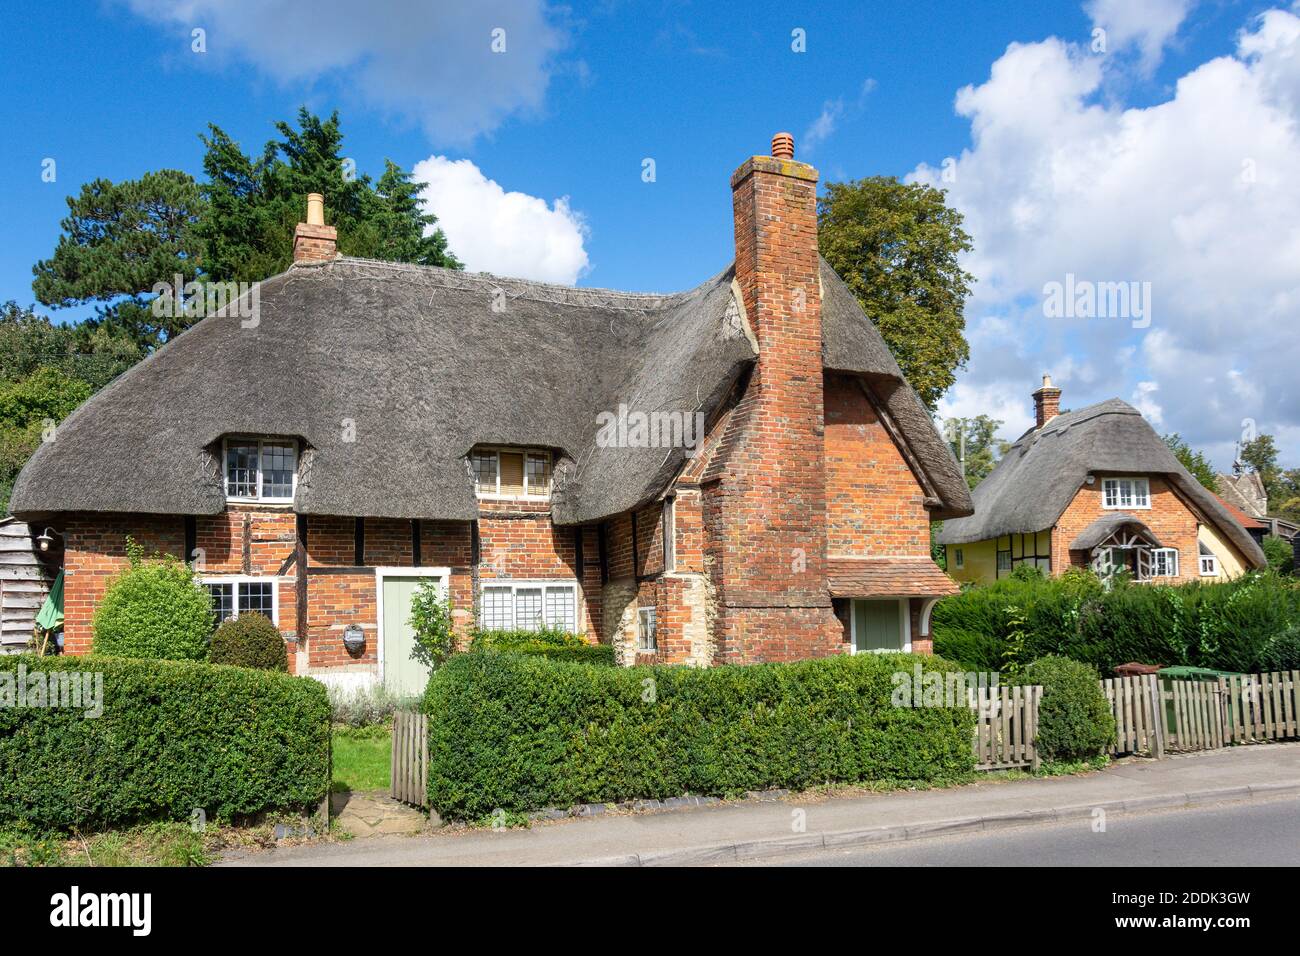 Cottages à toit de chaume, High Street, Clifton Hampden, Oxfordshire, Angleterre, Royaume-Uni Banque D'Images